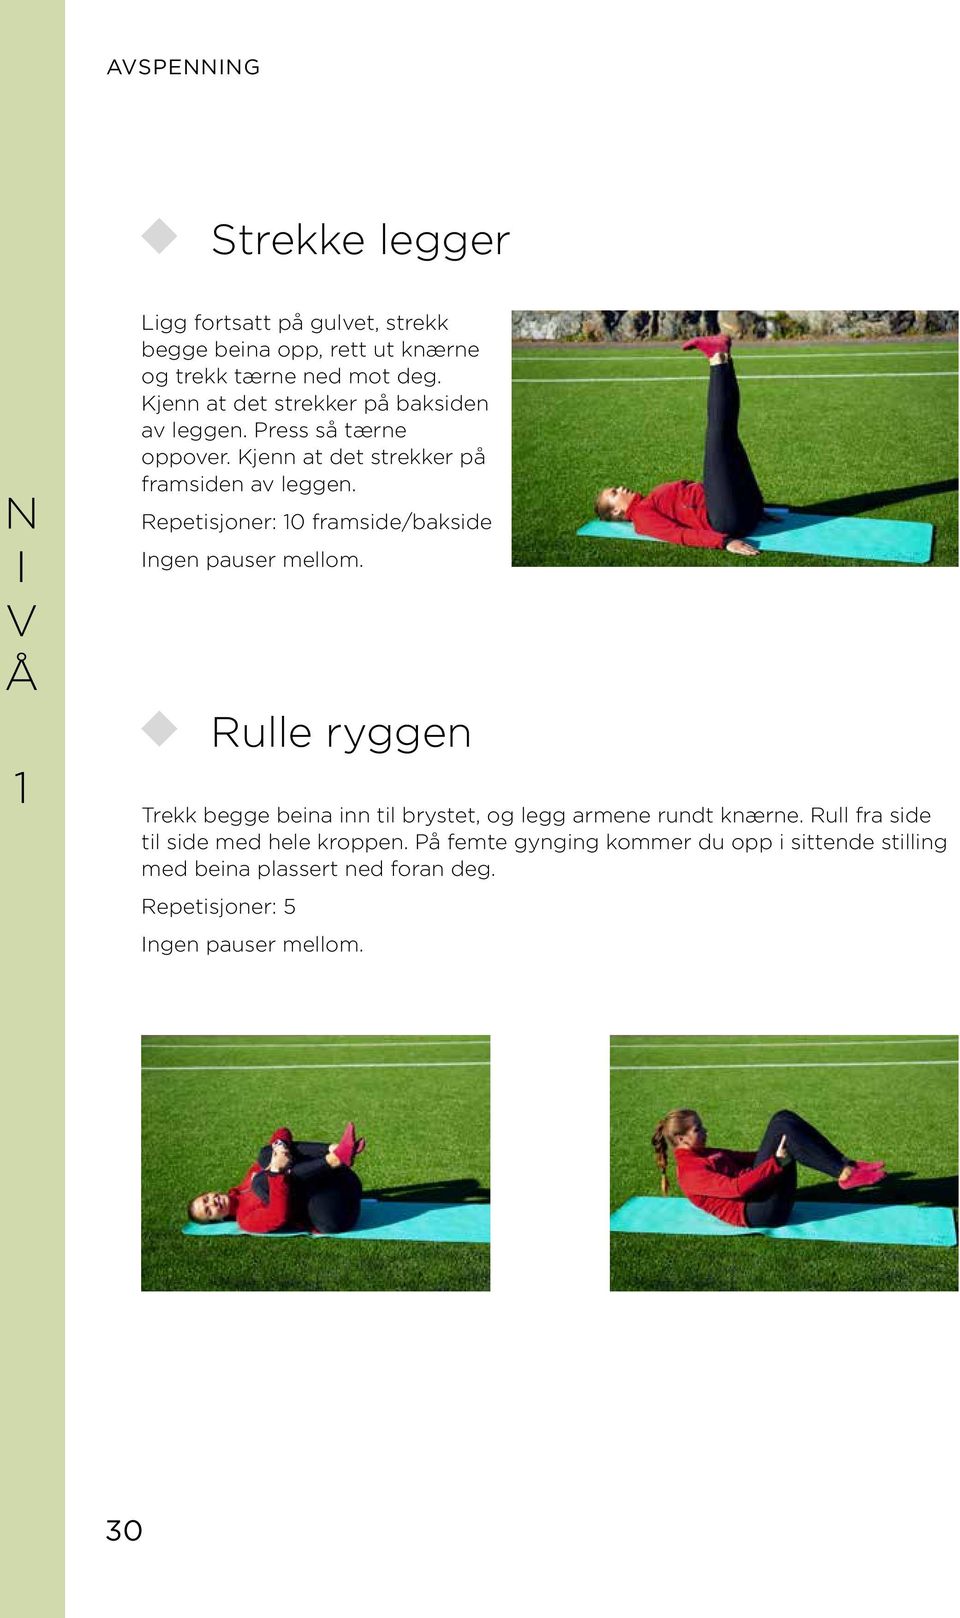 Repetisjoner: 10 framside/bakside ngen pauser mellom. Rulle ryggen Trekk begge beina inn til brystet, og legg armene rundt knærne.